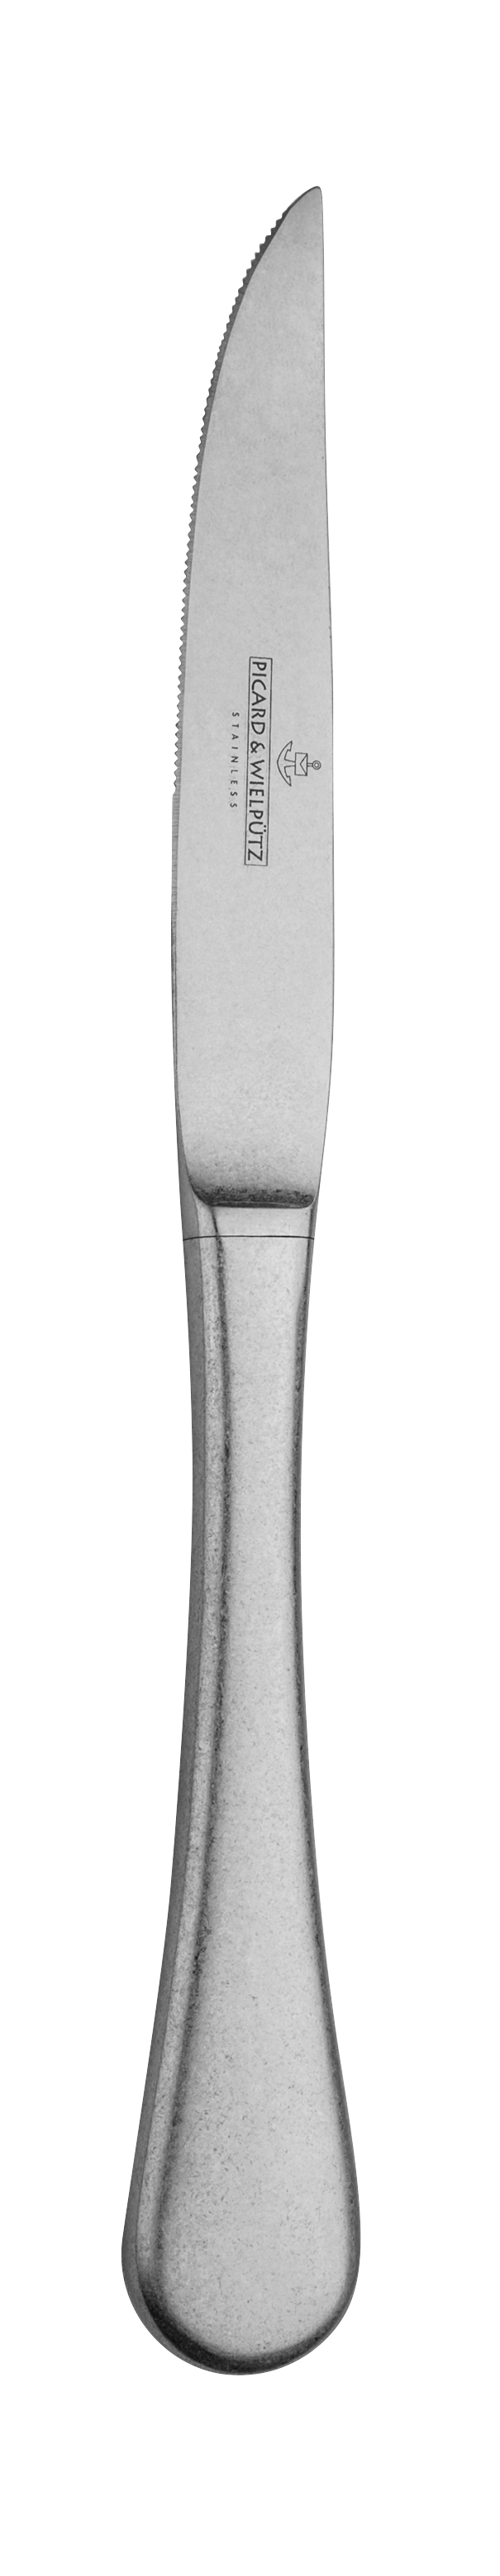 Picard & Wielpütz Steakmesser Hohlheft, Modell ROSSINI vintage - 12-teilig